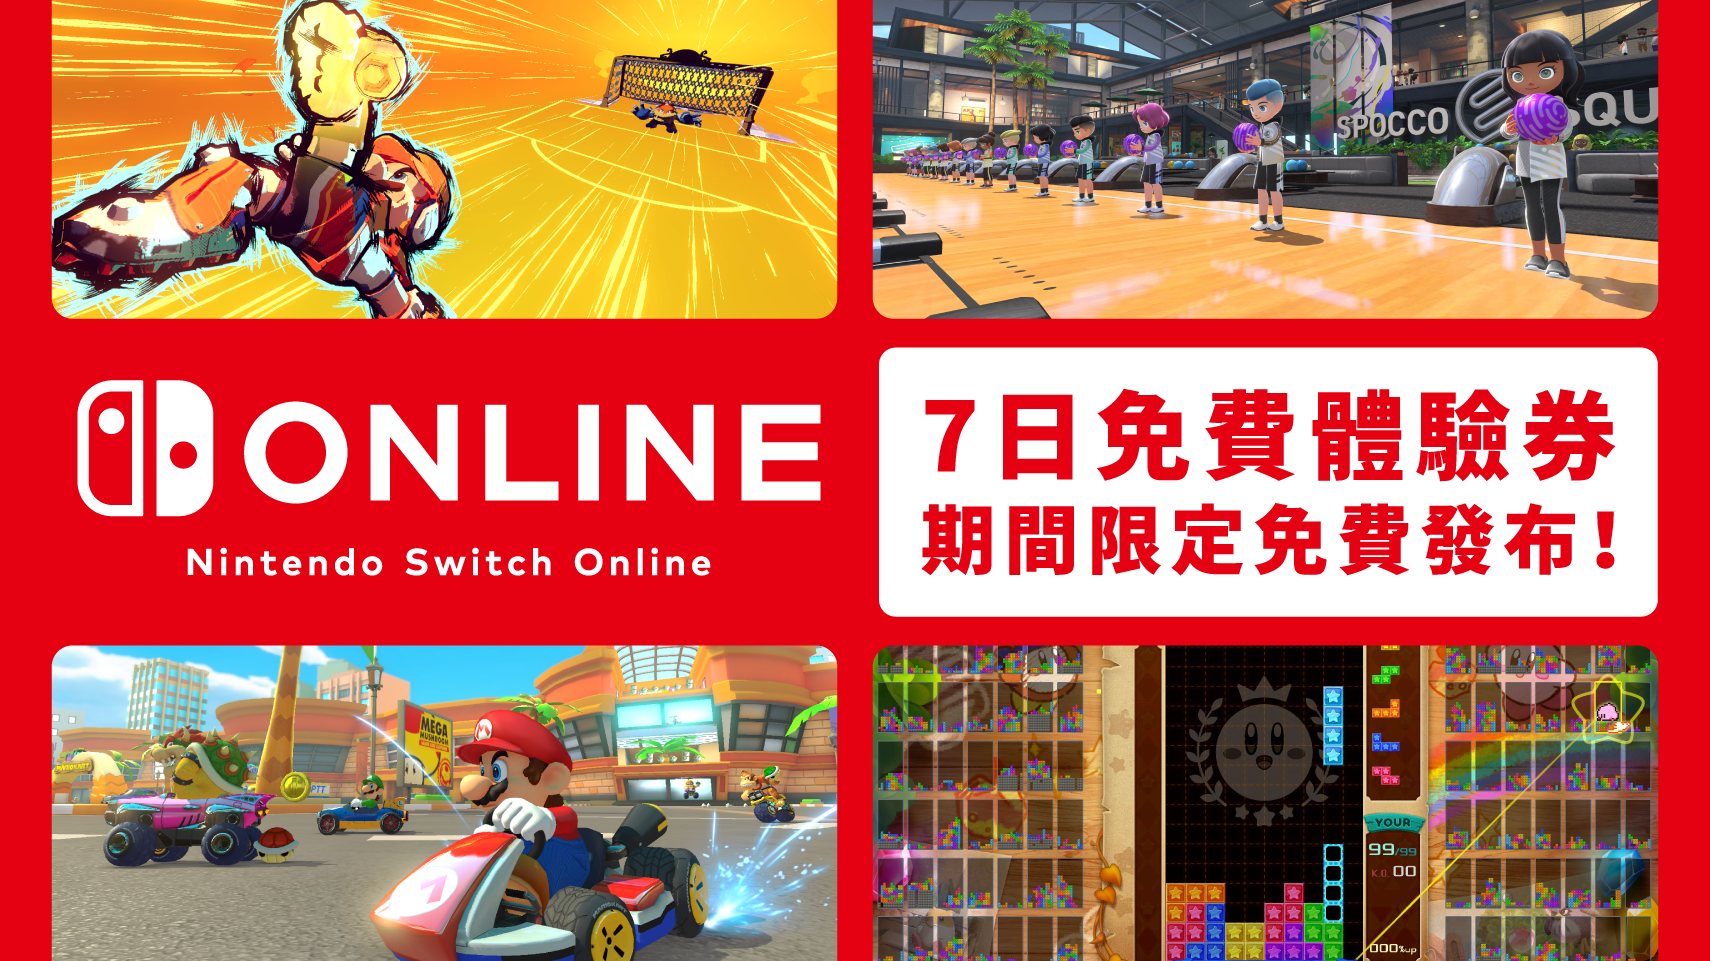 港服·期间限定发布 Nintendo Switch Online 7日免费体验券！介绍能体验线上游玩的多款服务。